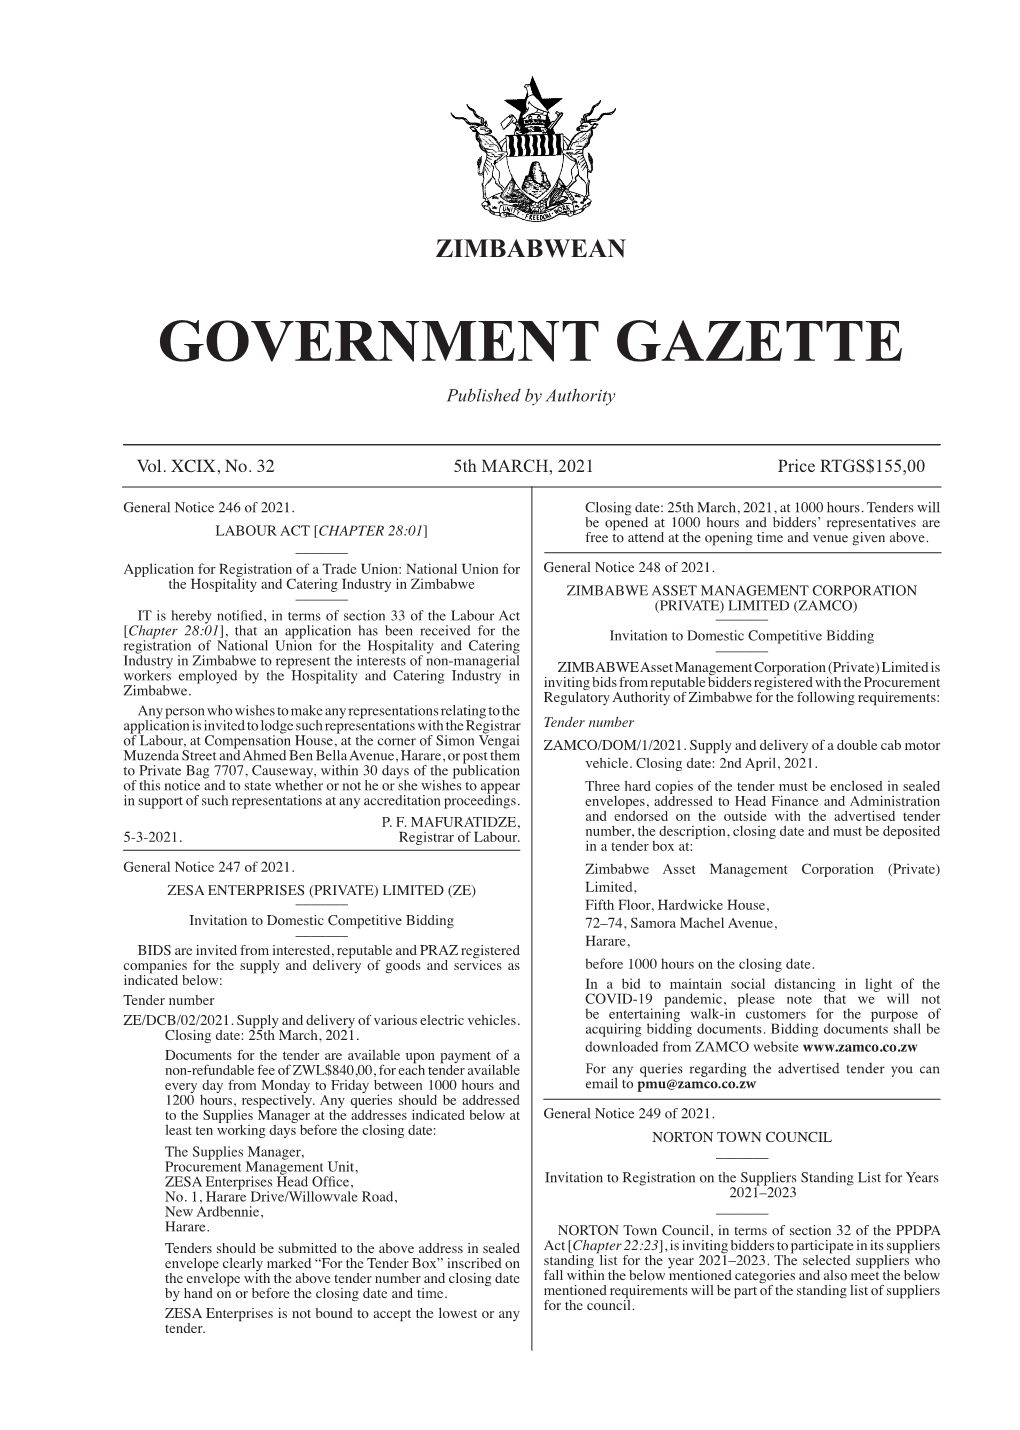 Government Gazette, 5Th March, 2021 167